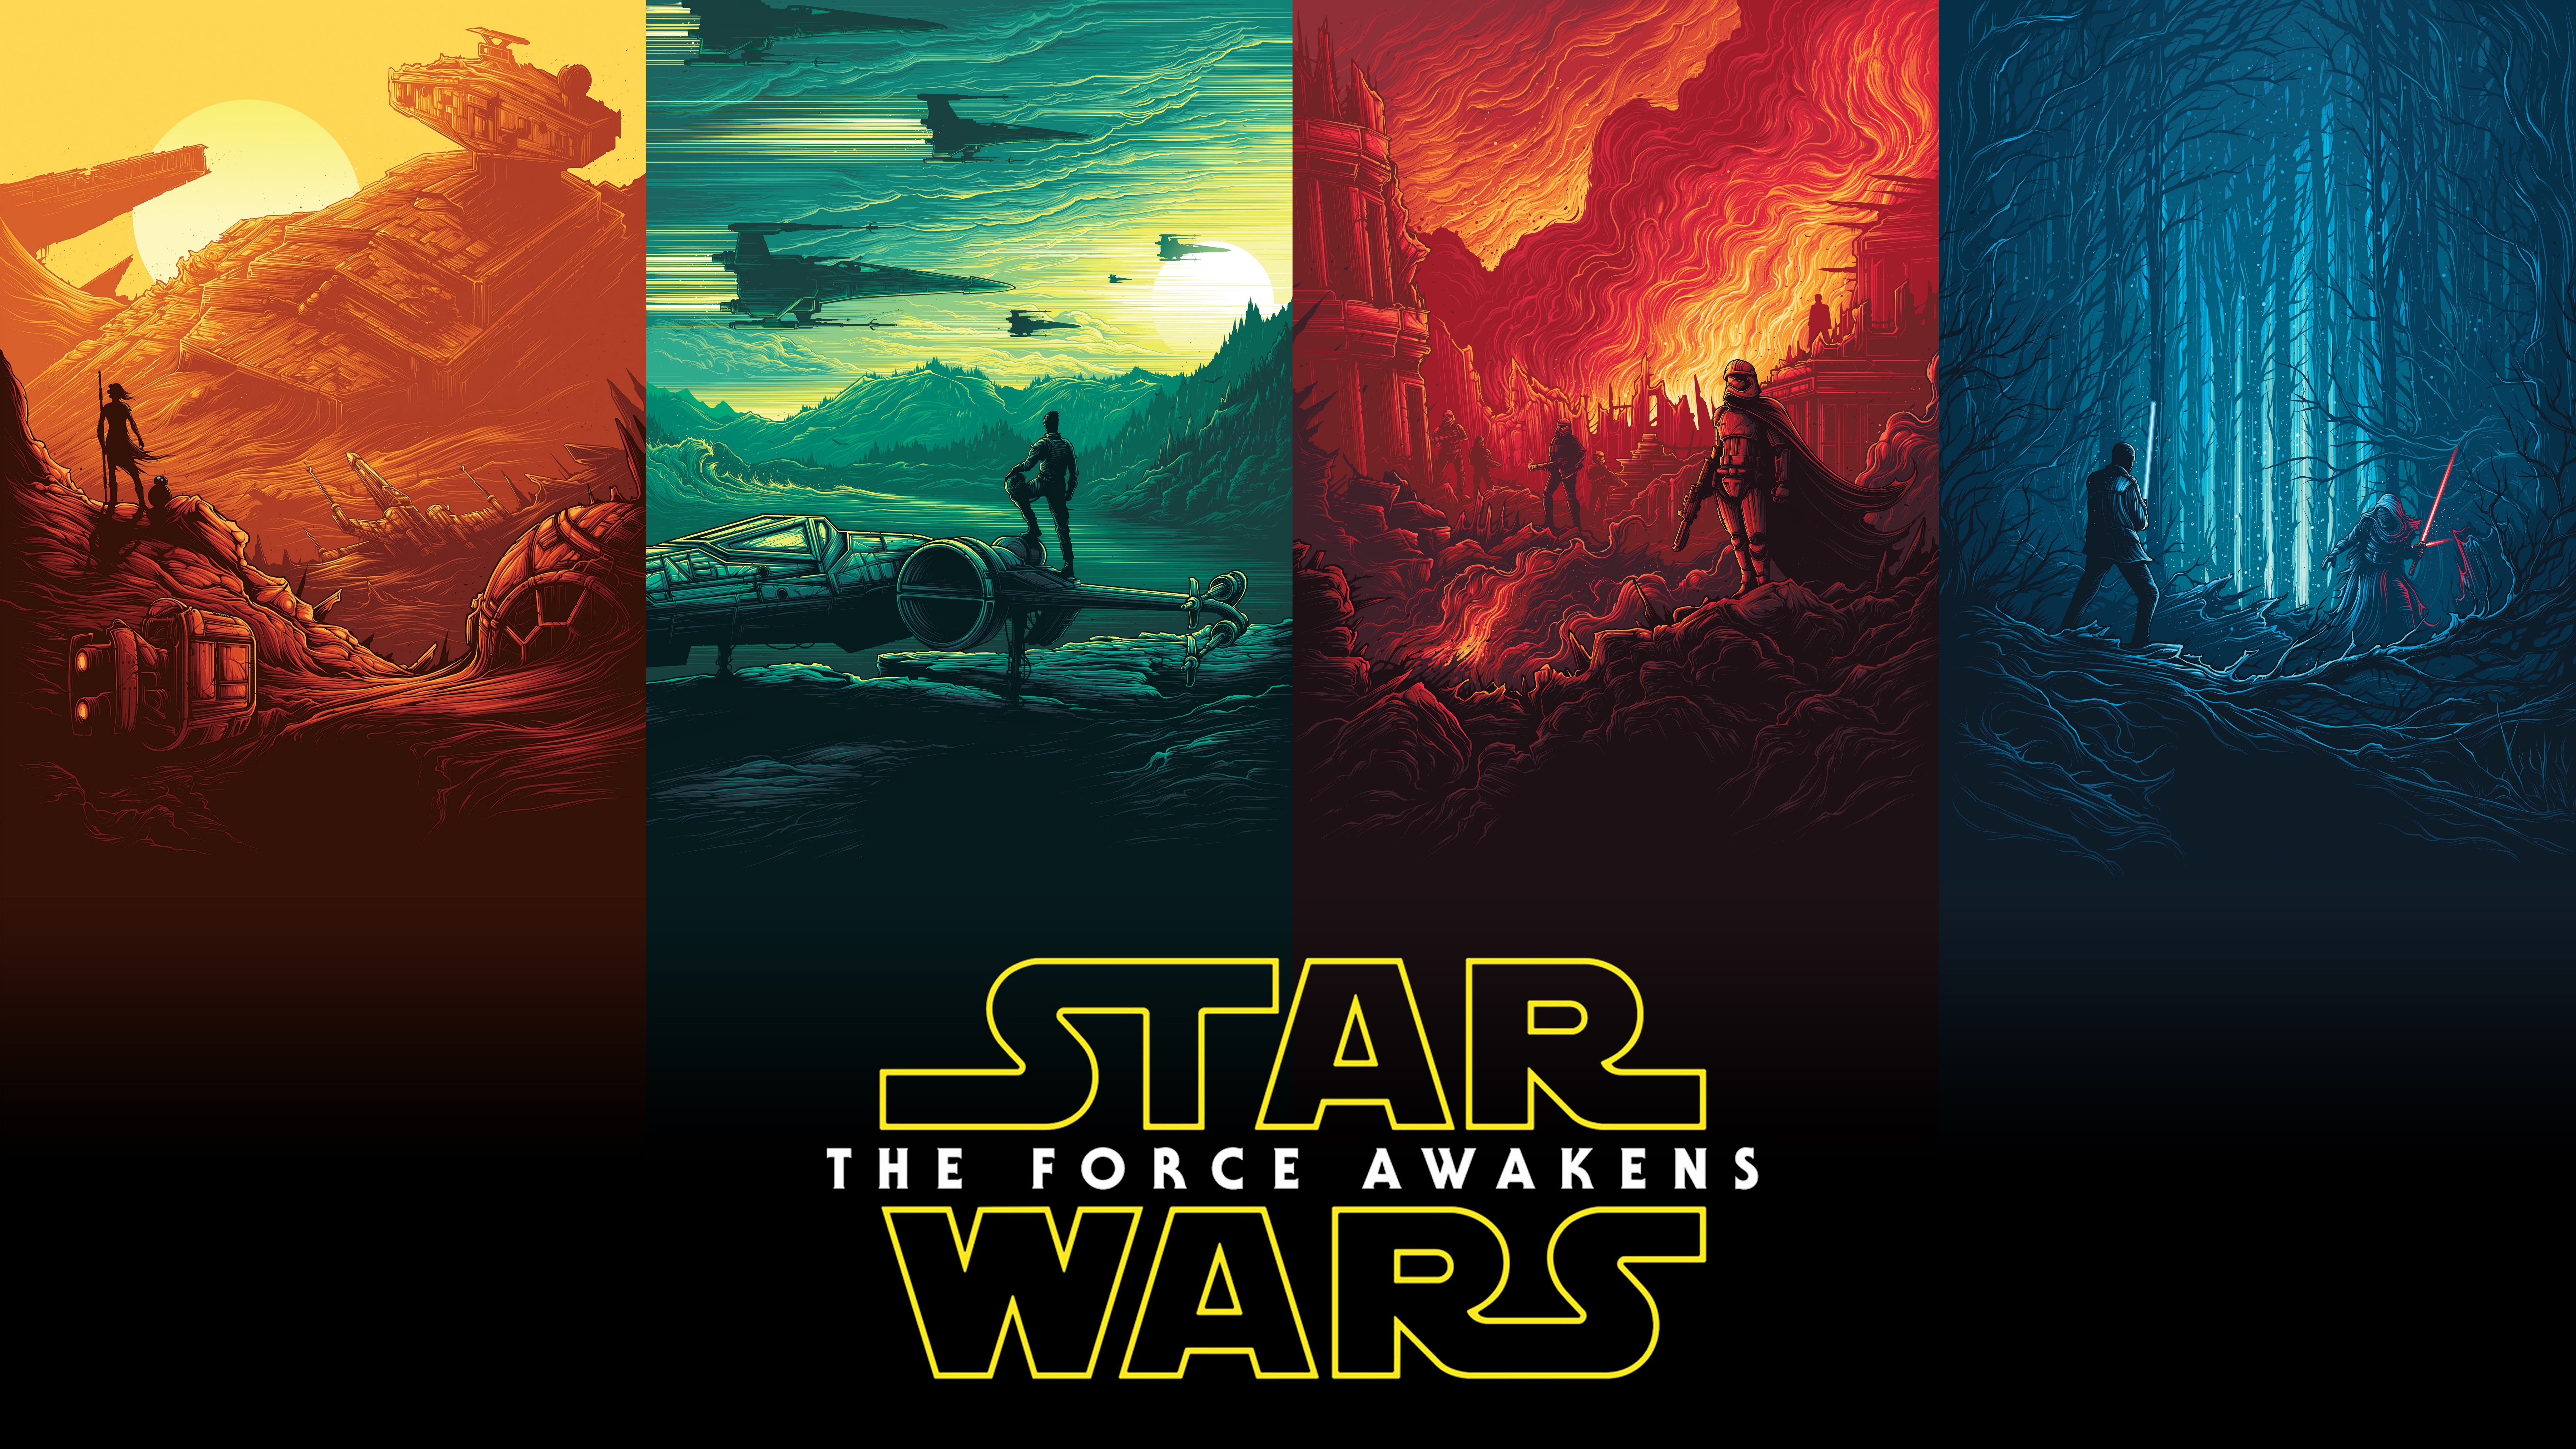 Star Wars Rey Finn Kylo Ren Han Solo Luke Skywalker - Star Wars Hd Poster - HD Wallpaper 